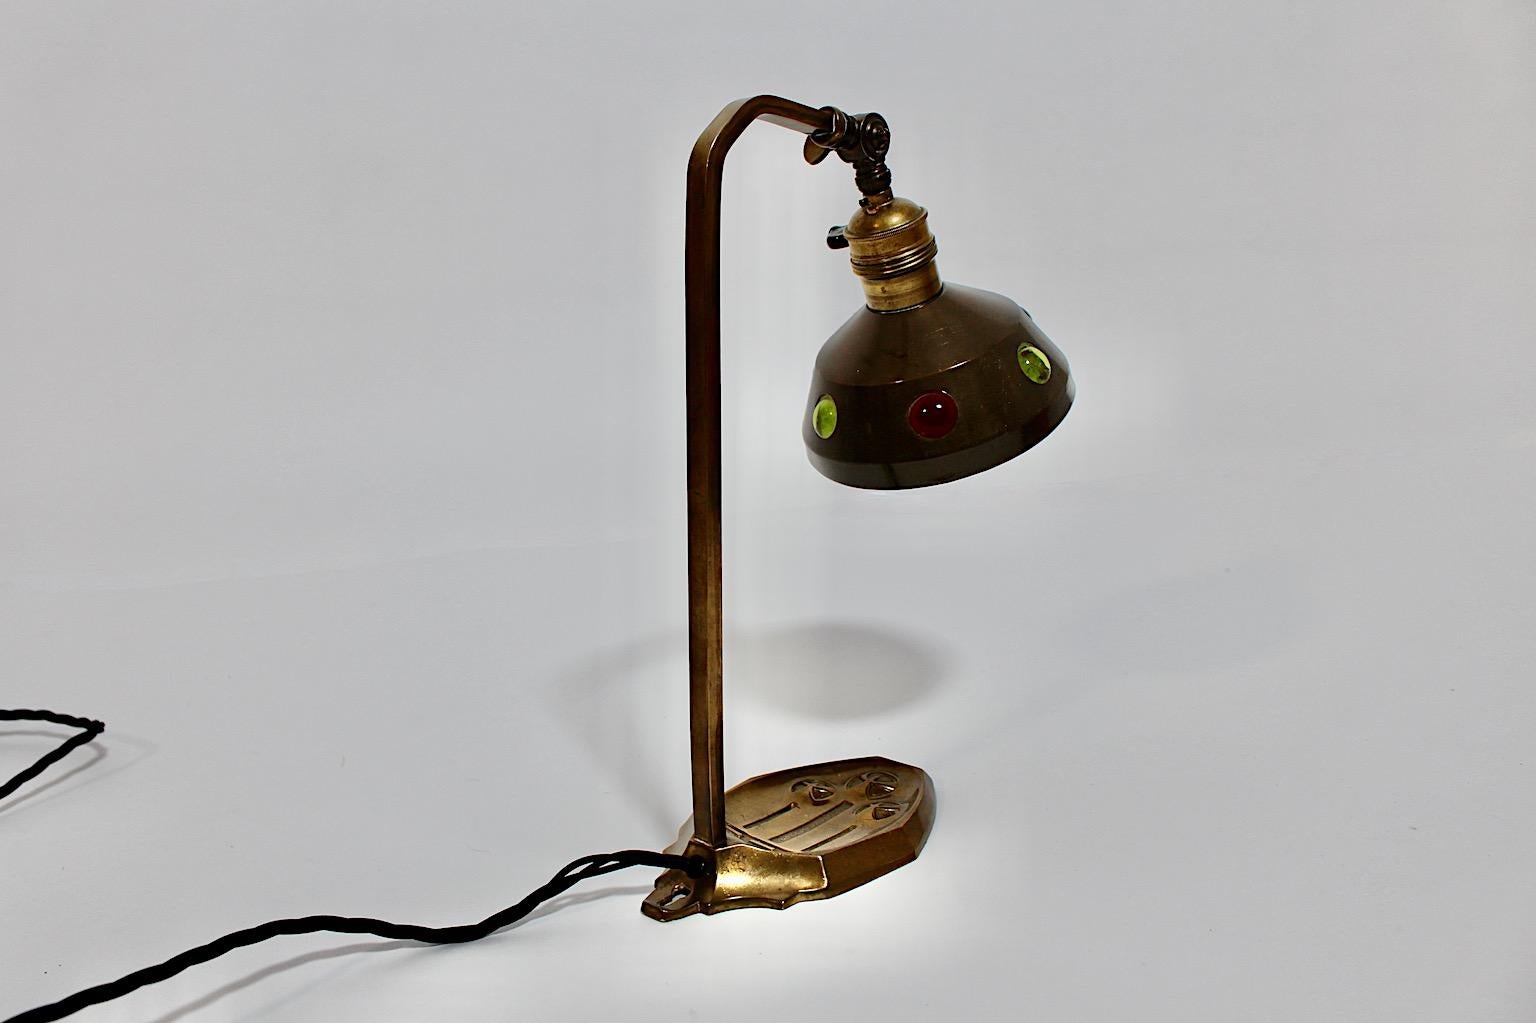 Austrian Jugendstil Vintage Brass Multicolored Glass Stones Table Lamp 1910 Austria For Sale